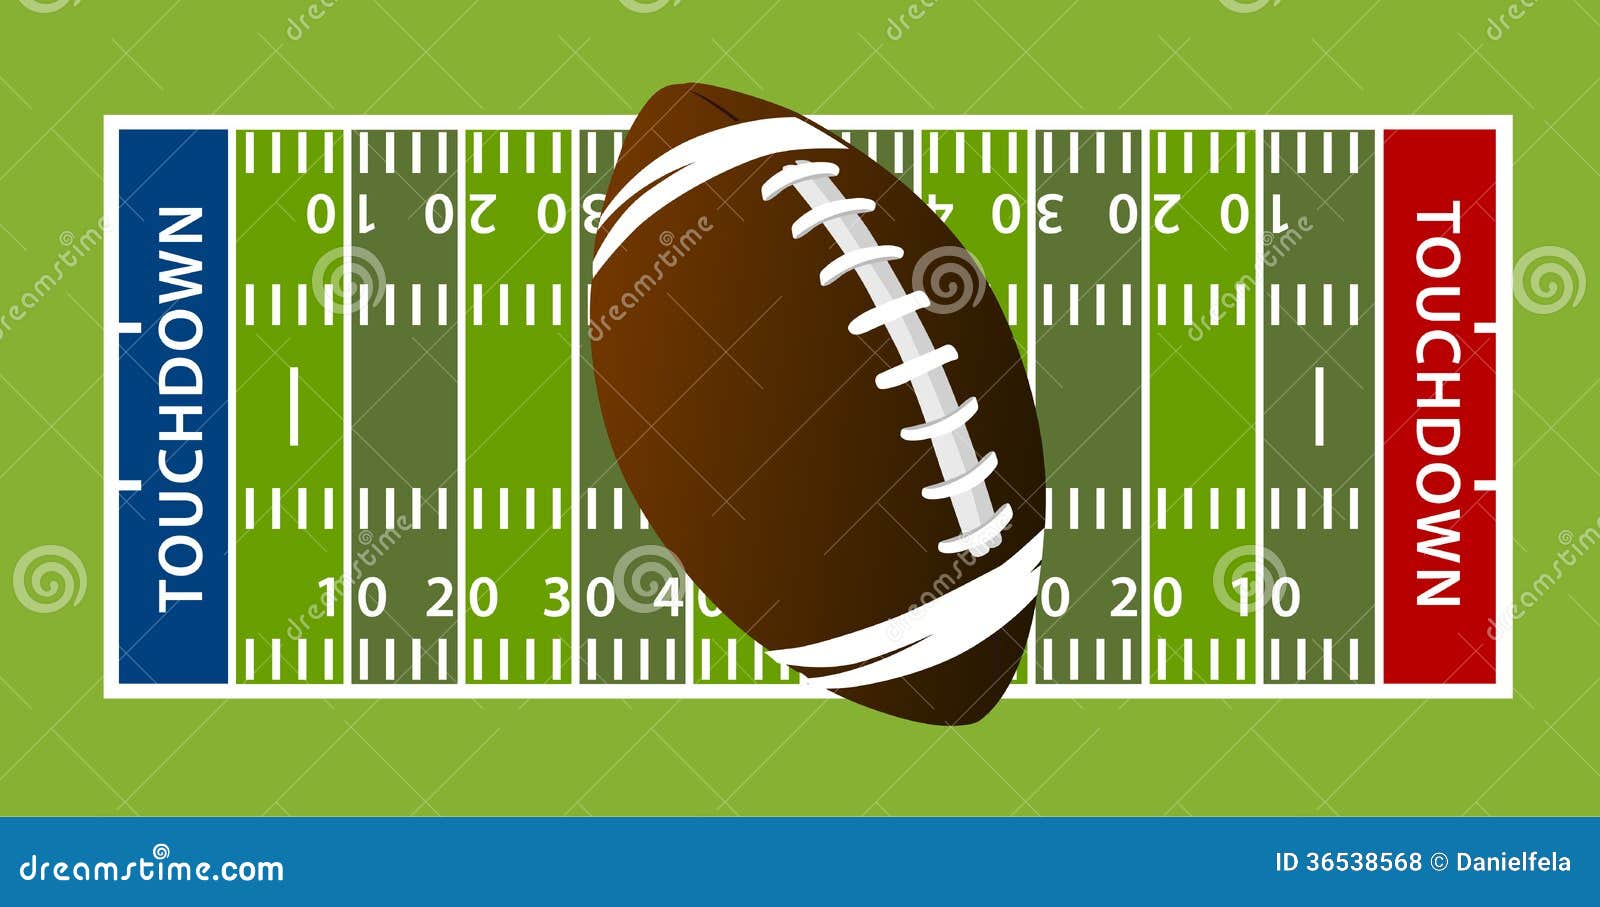 football touchdown field